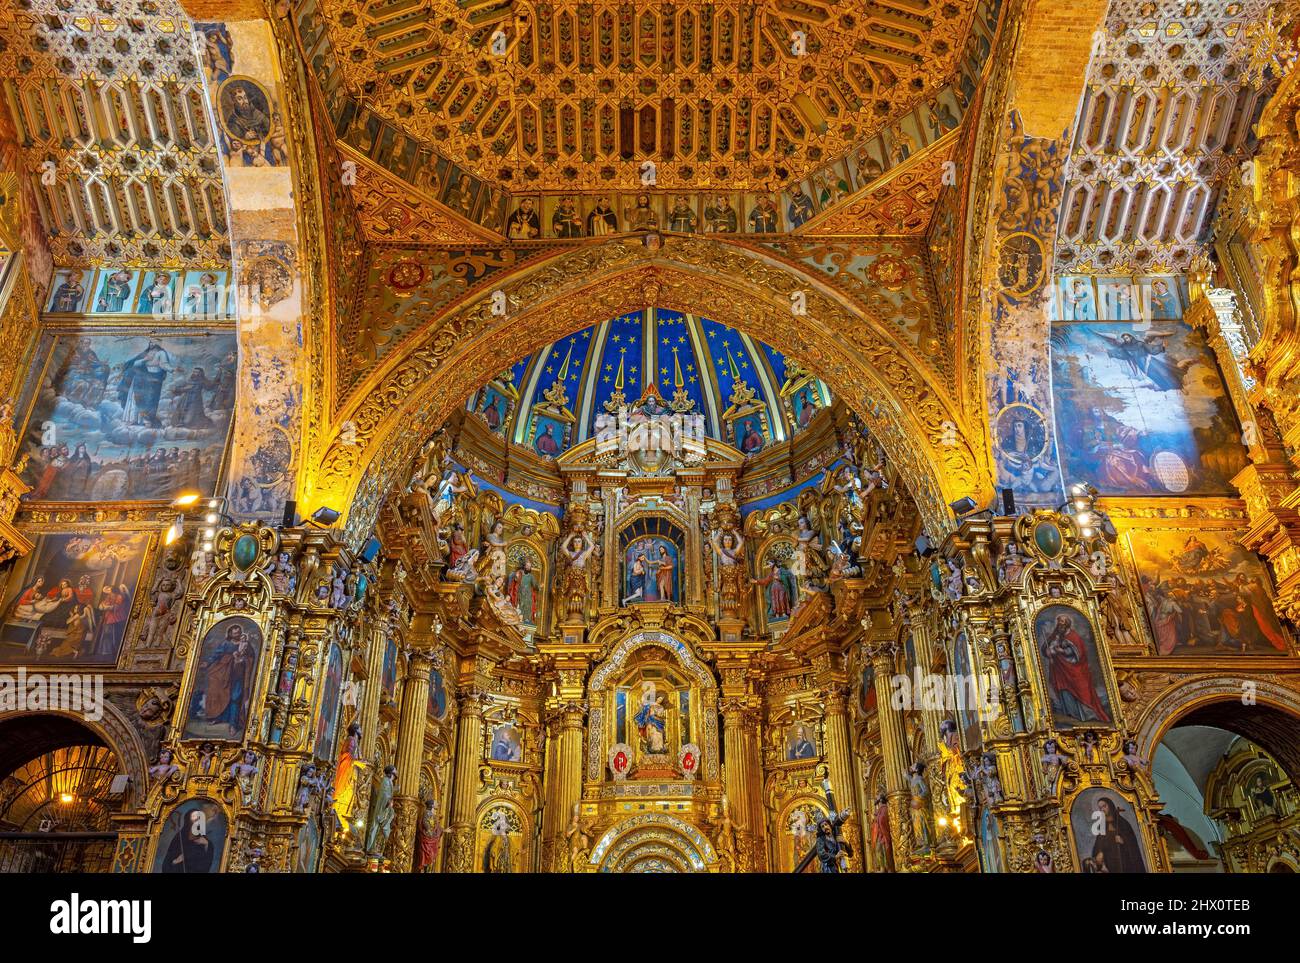 Virgen de Quito en el retablo principal de la Iglesia de San Francisco y convento con cúpula azul y decoraciones doradas, Quito, Ecuador. Foto de stock